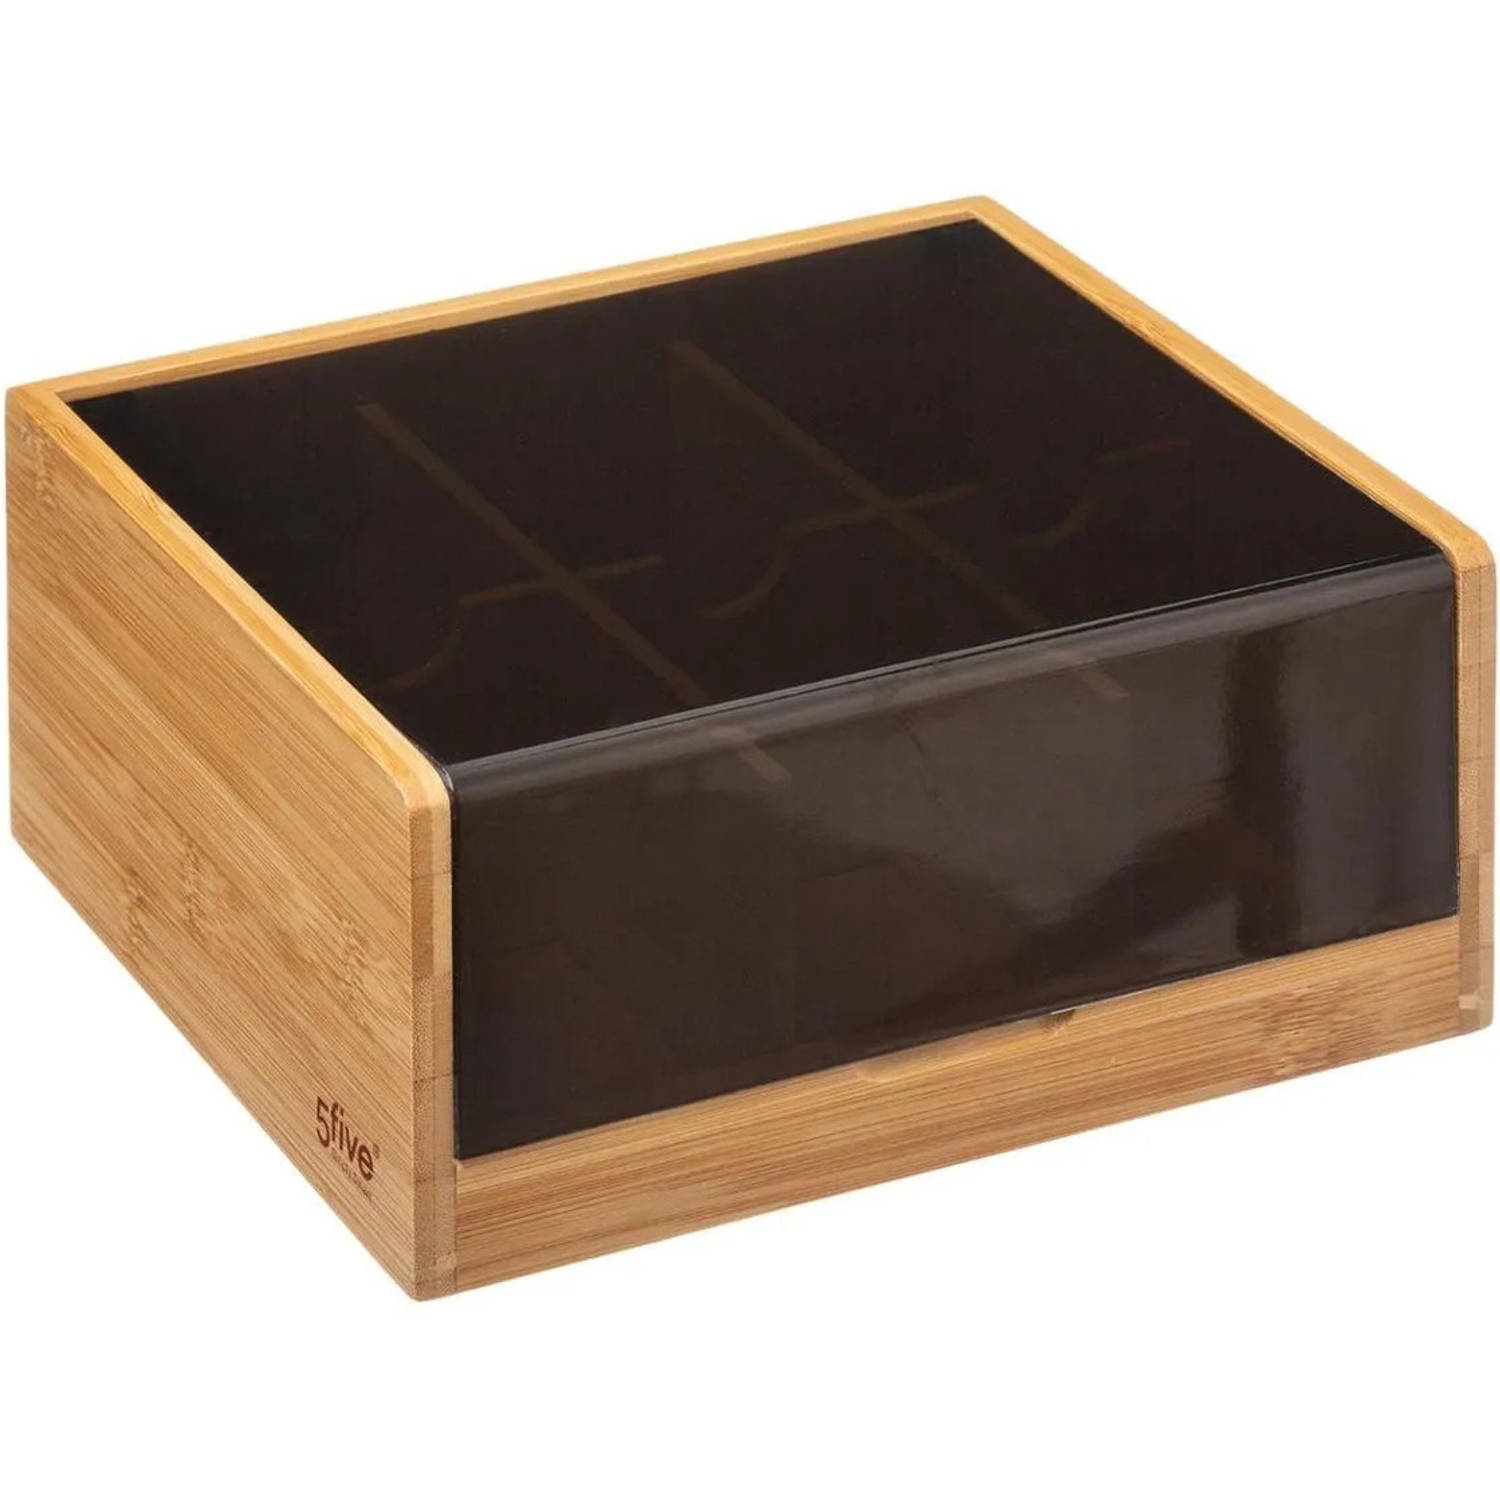 Theedoos/theekist bruin/zwart 6-vaks 22 x 21 cm van bamboe hout - Theedozen